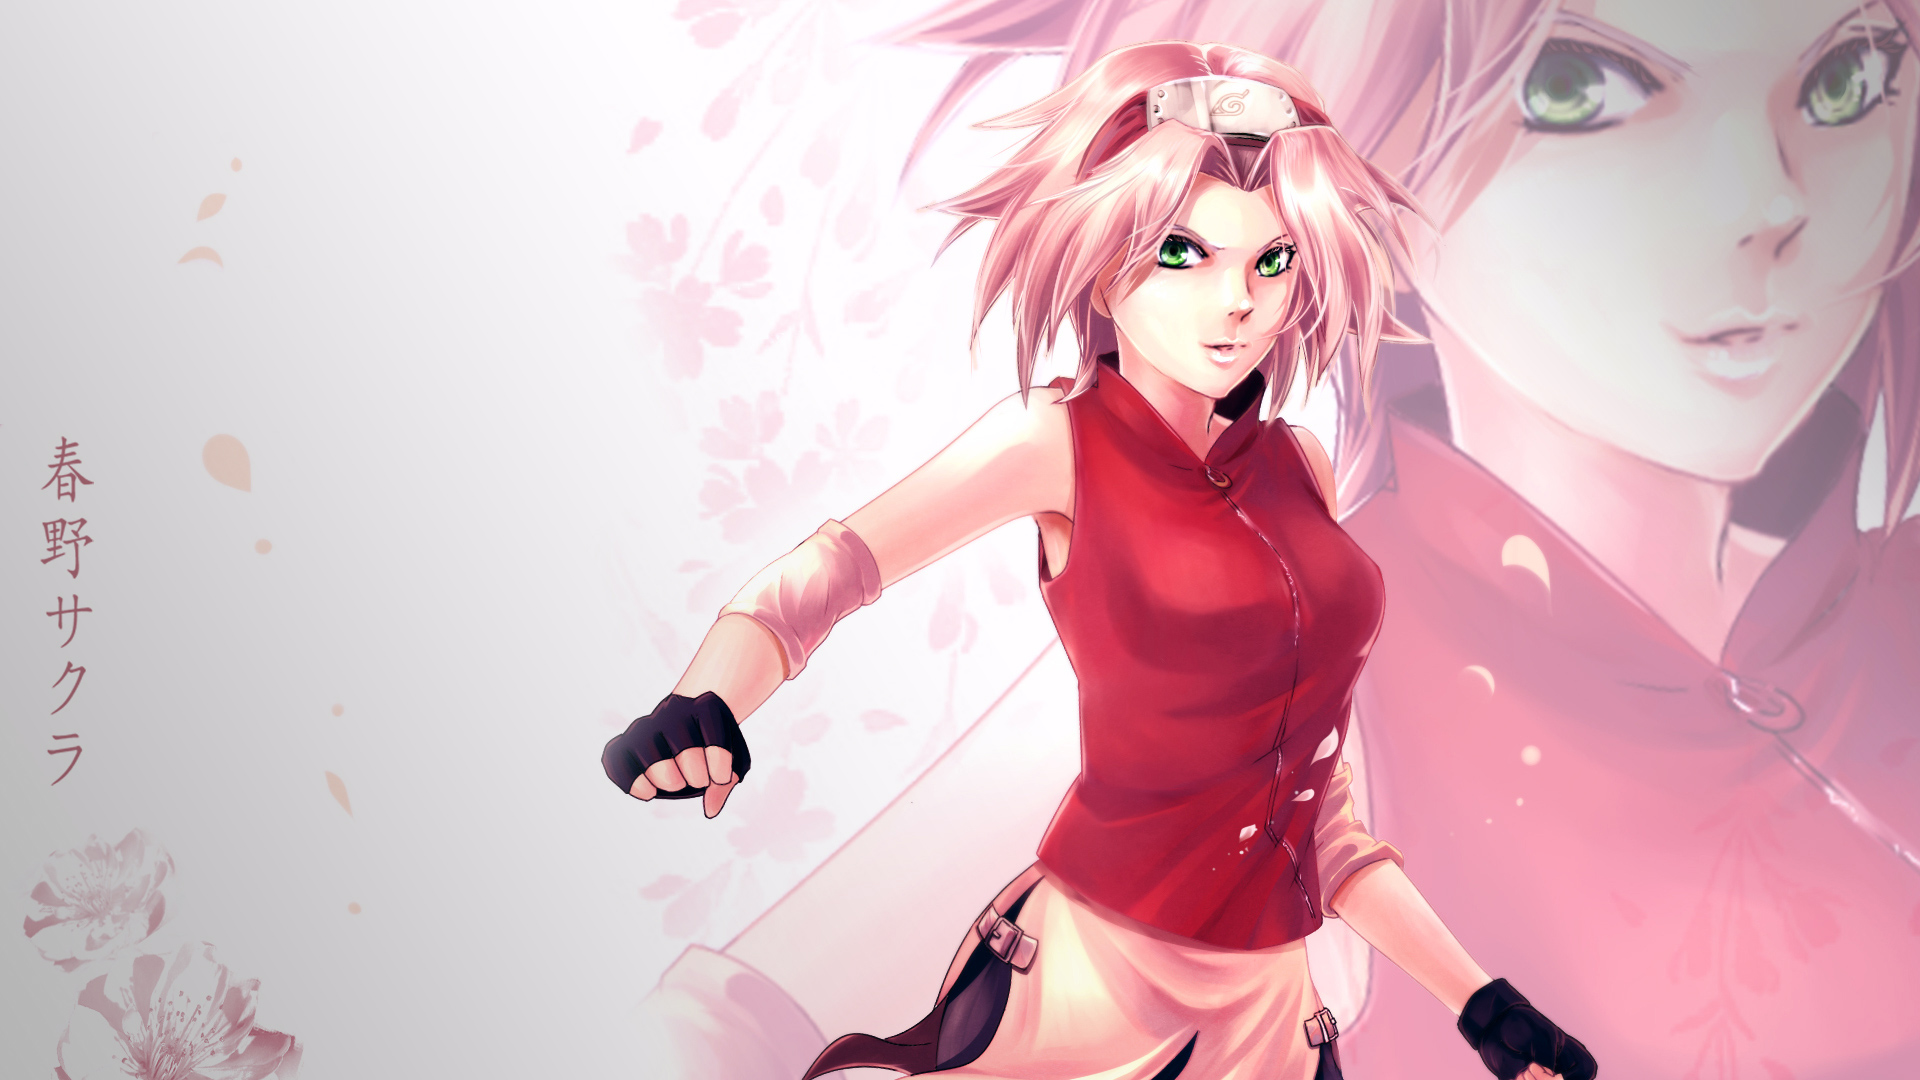 Anime Full HD Wallpaper 1080p Desktop Background